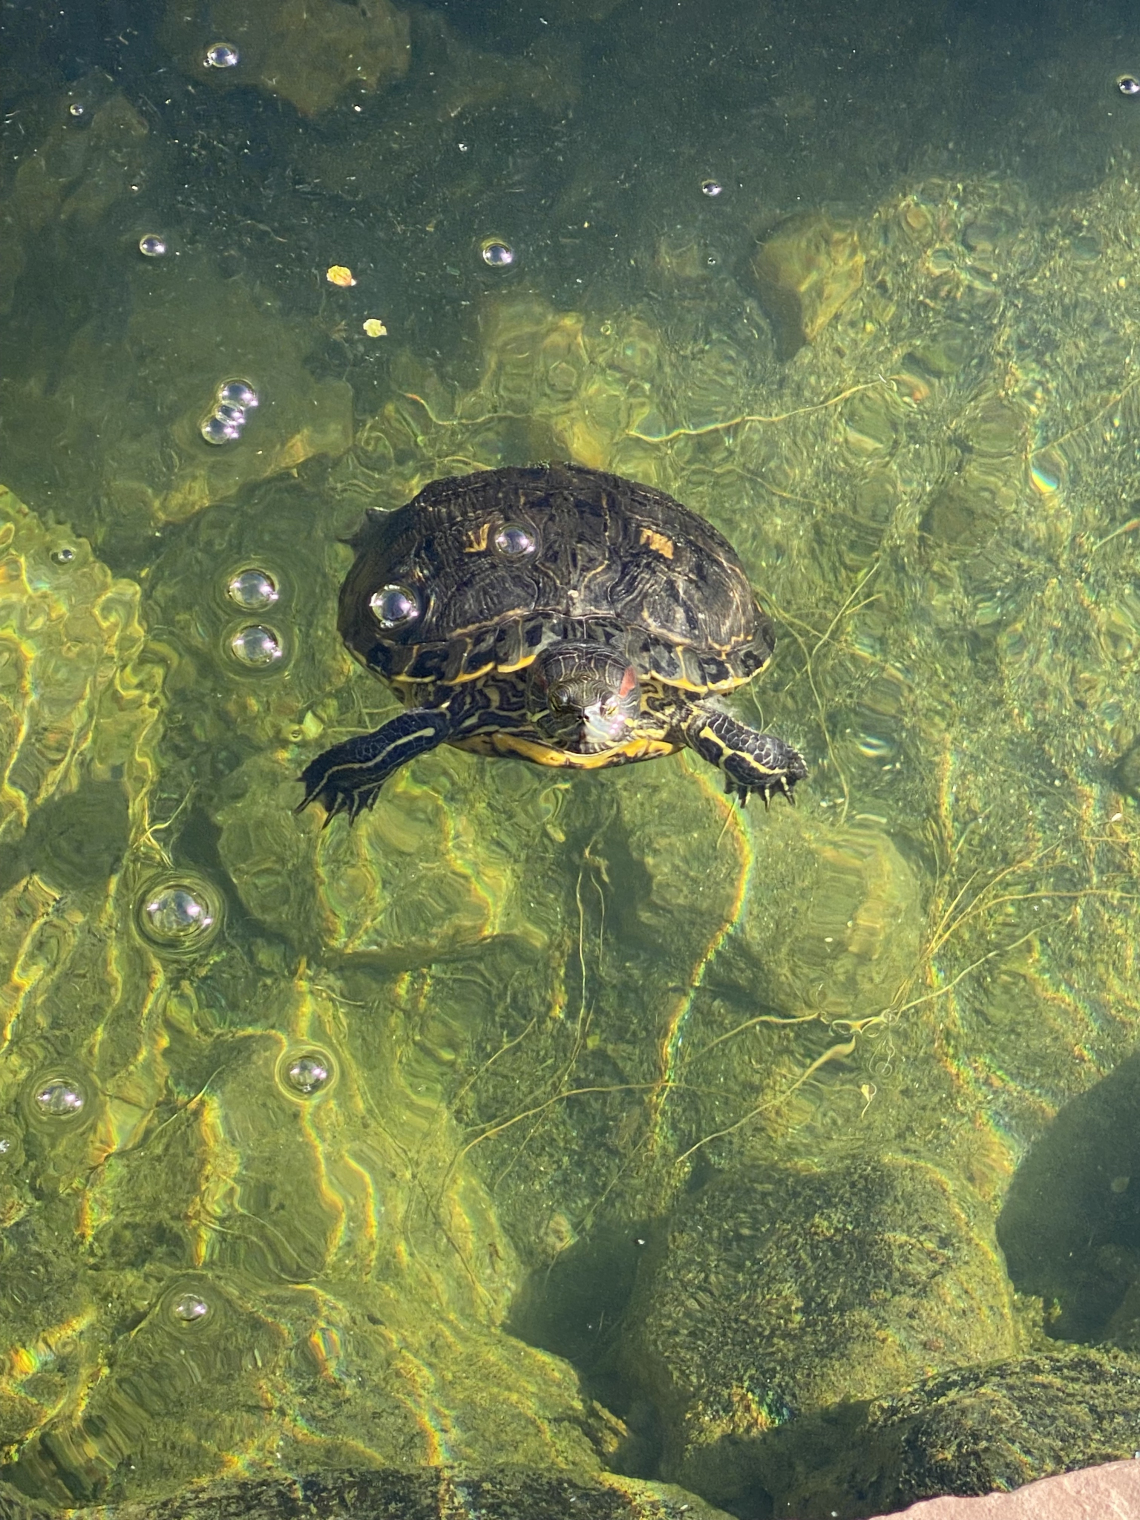 Jael Walker photo showing a turtle in water